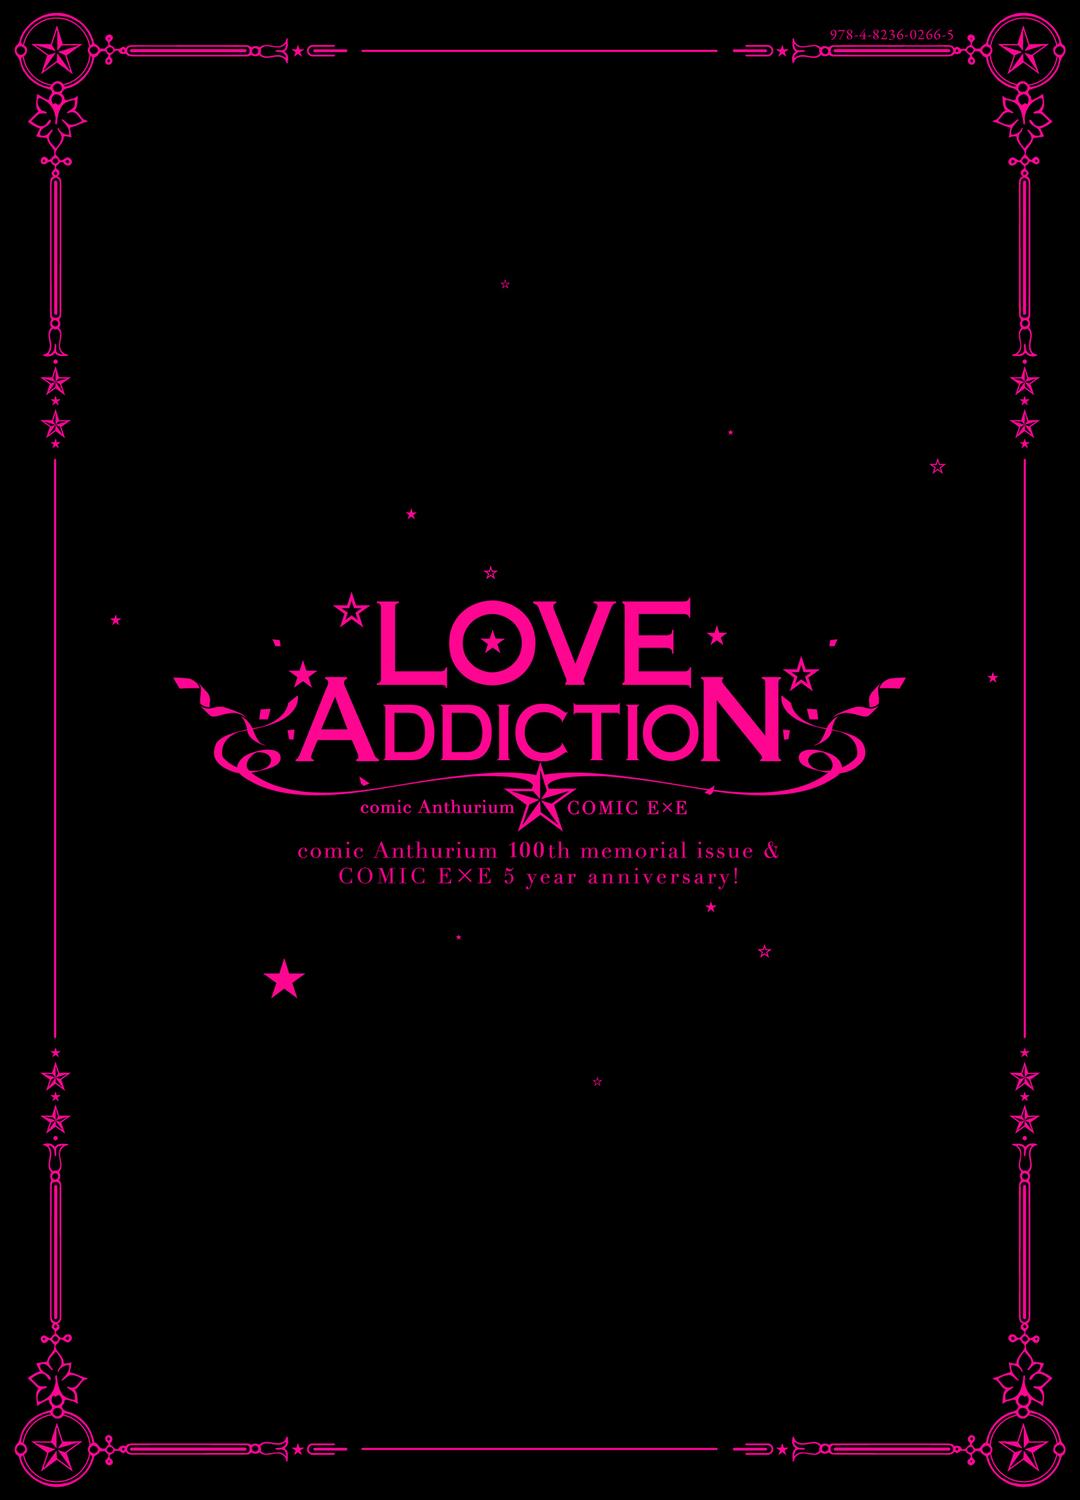 LOVE ADDICTION 304